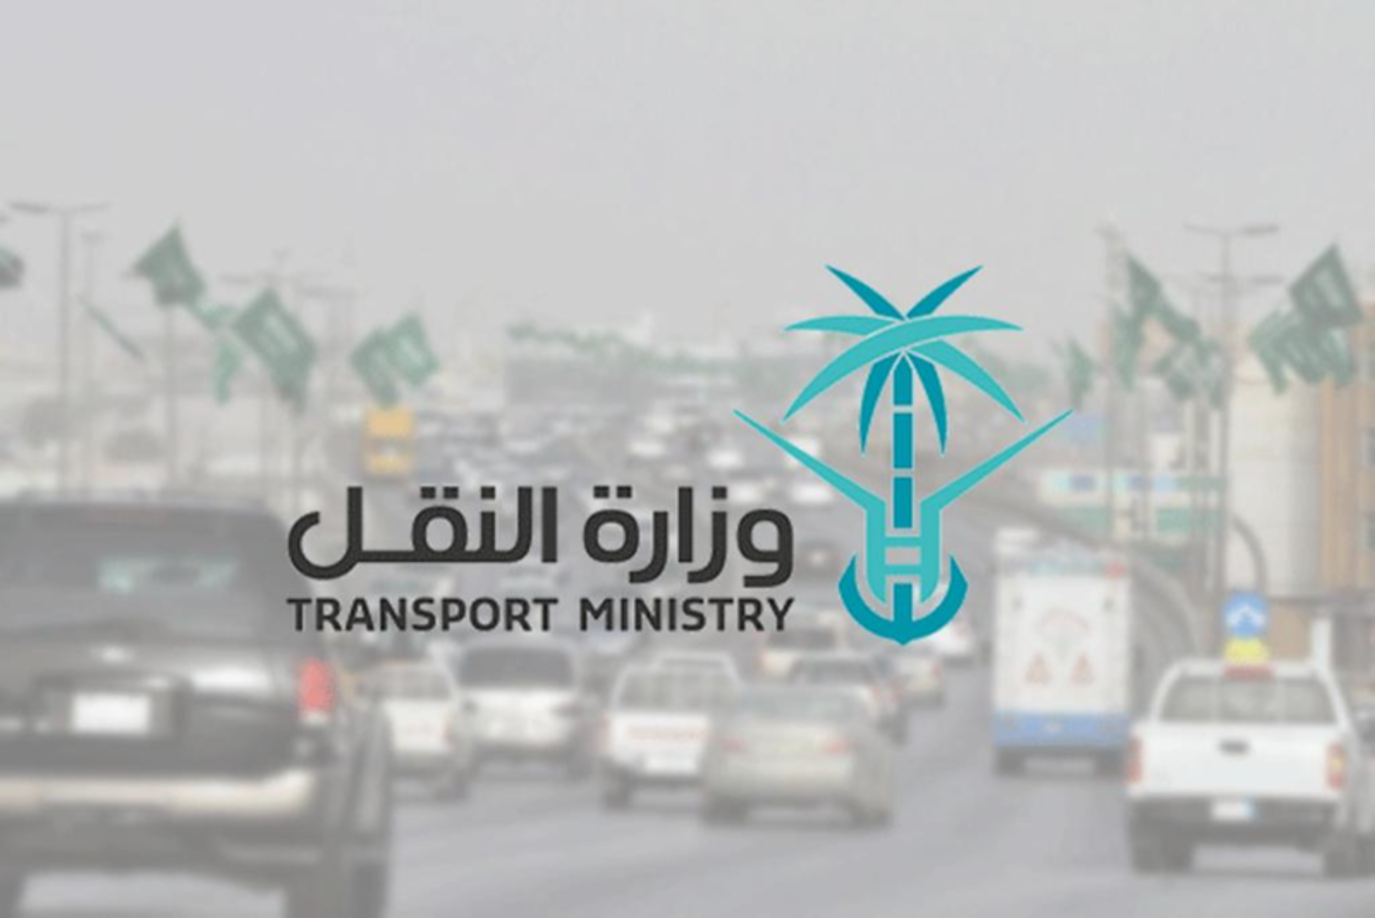 وظائف وزارة النقل والخدمات اللوجستية